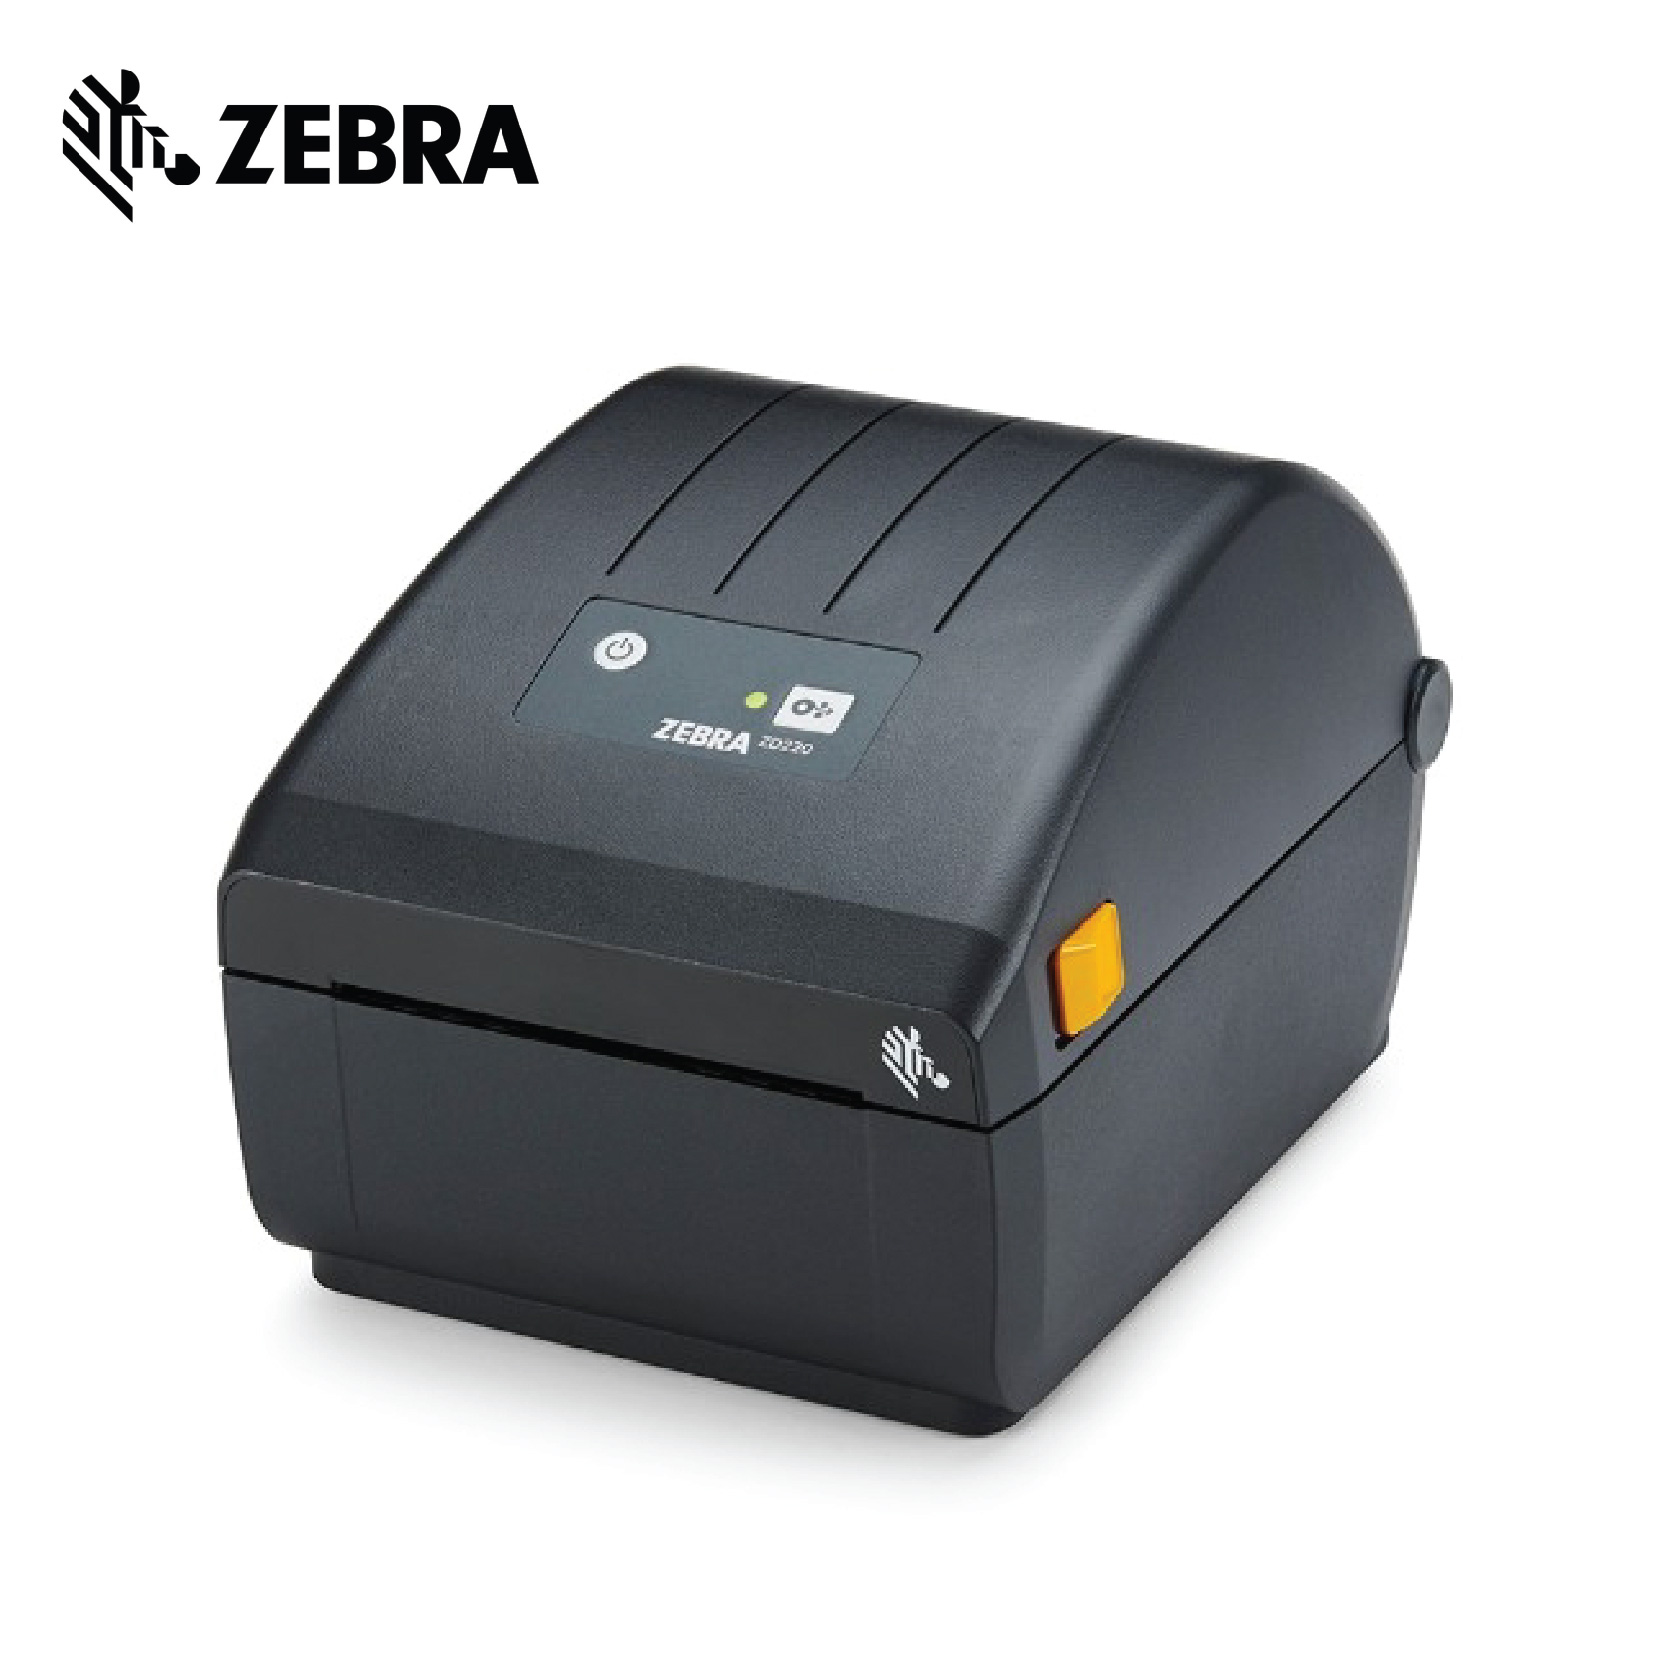 Zebra Zd230 Value Desktop Label Printer My